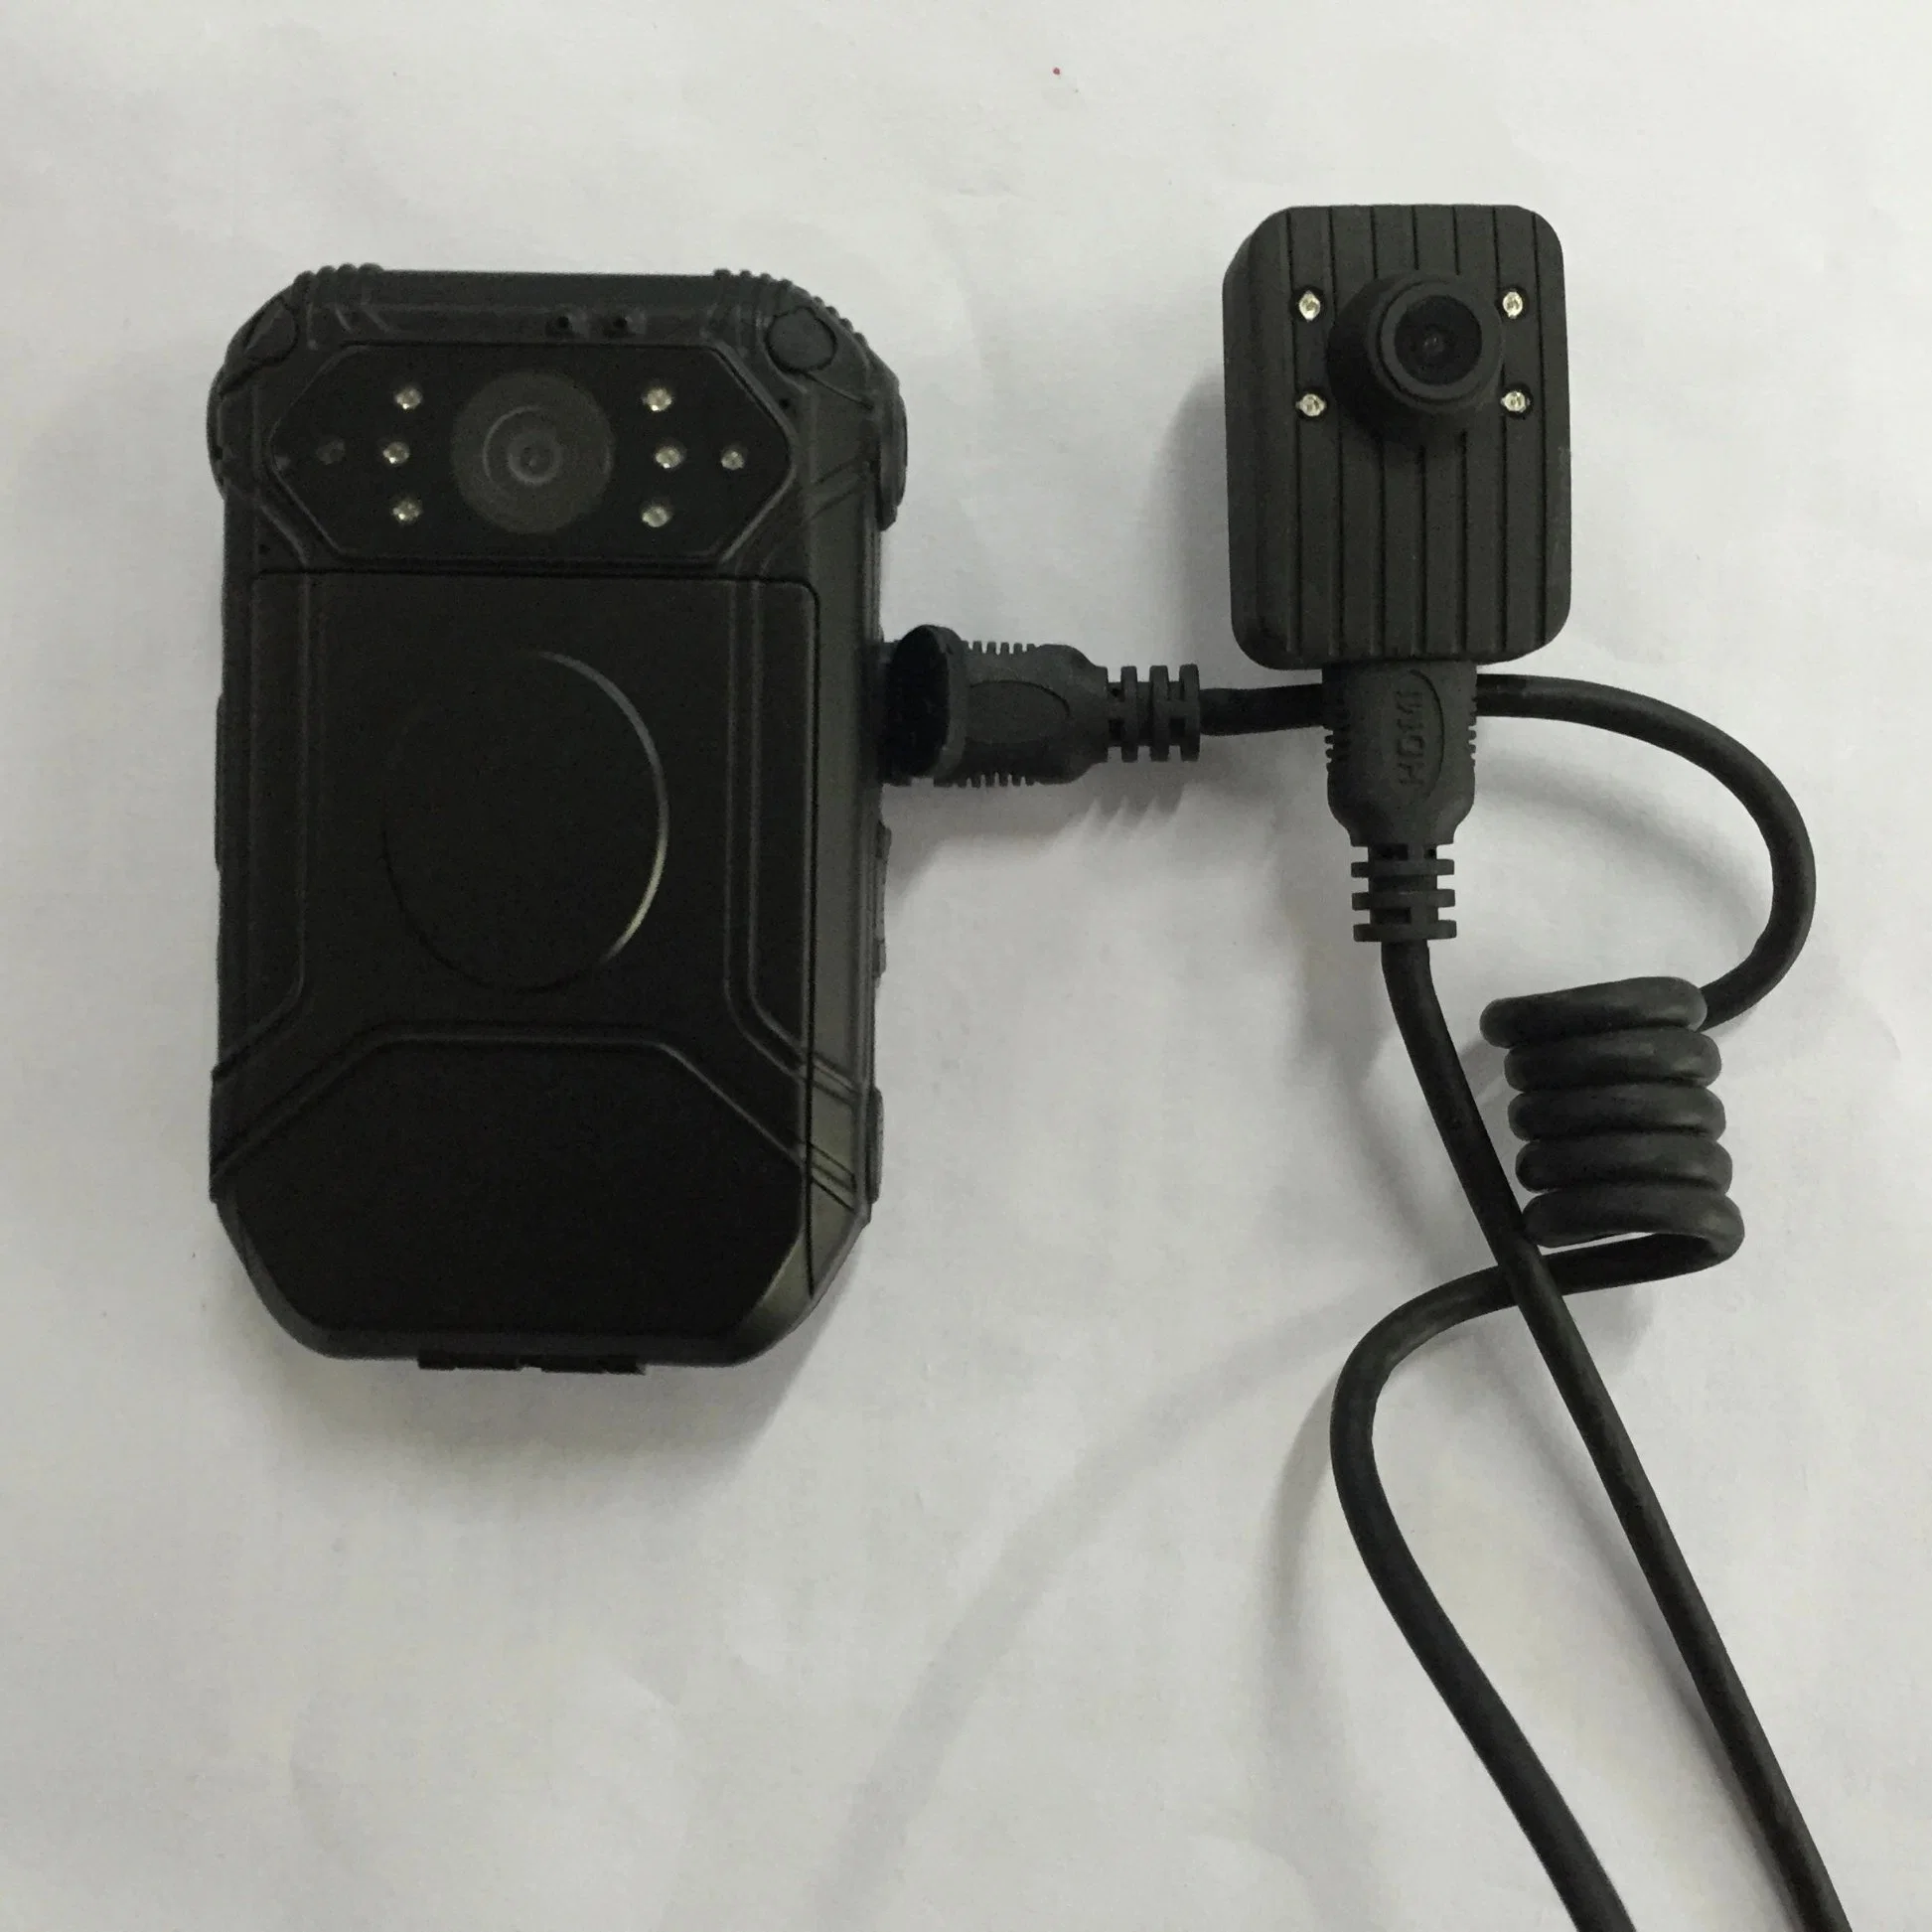 كاميرا محمولة يمكن استخدامها في مراقبة الجسم بواسطة كاميرات CCTV